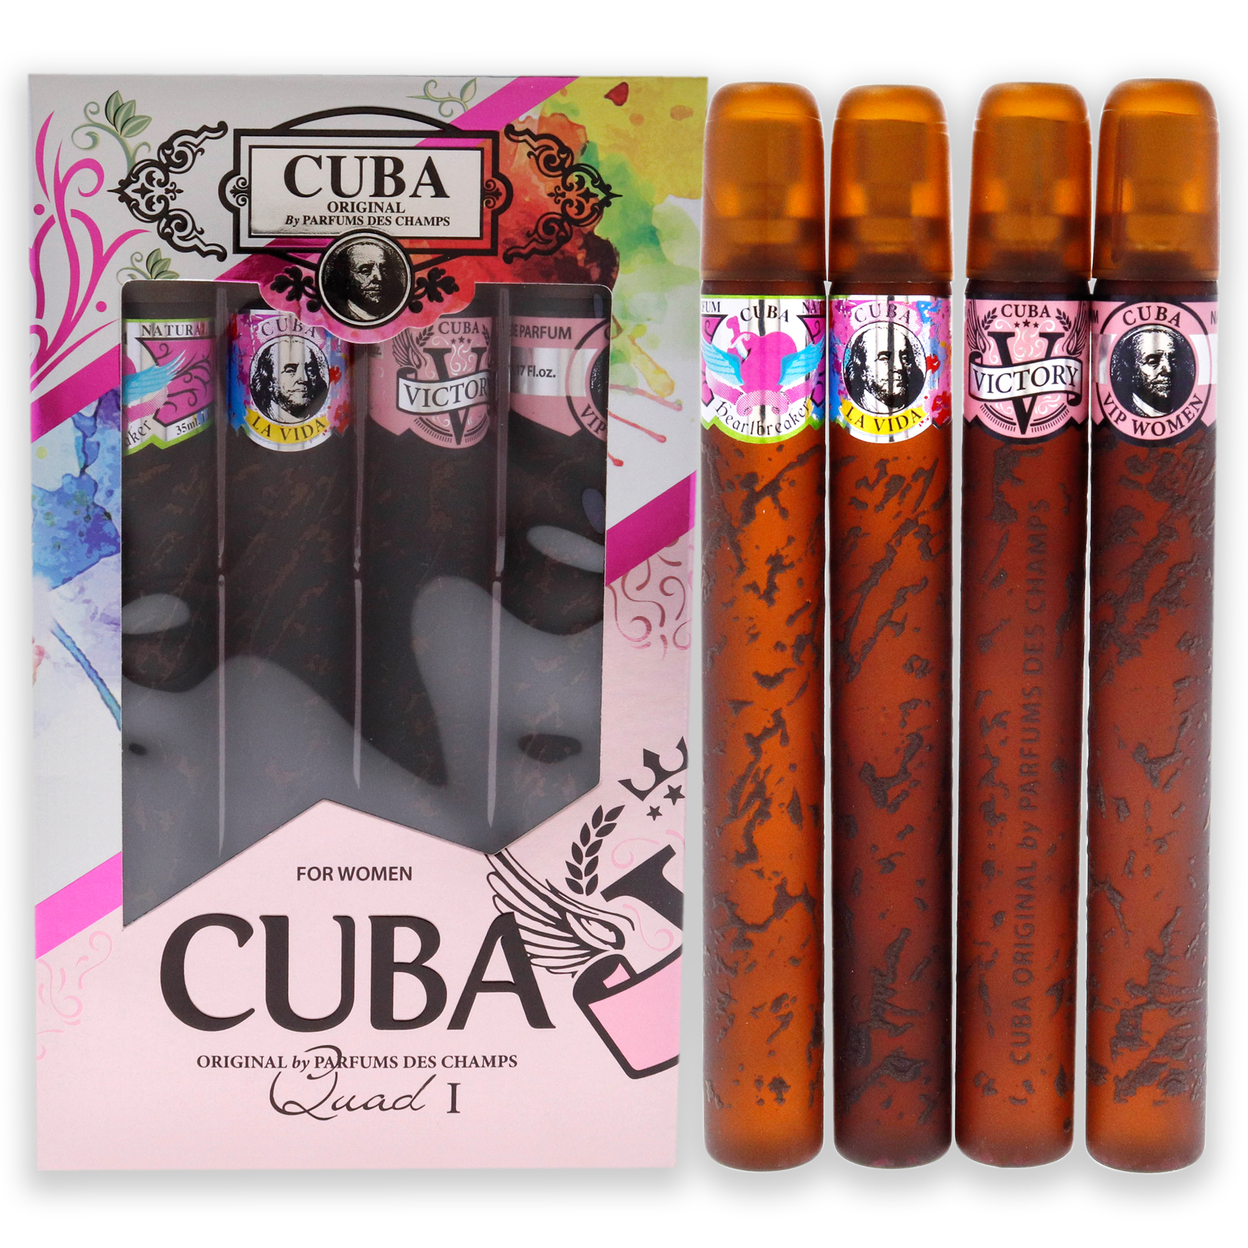 Cuba Quad I 4 Pc Gift Set 4 Pc Gift Set